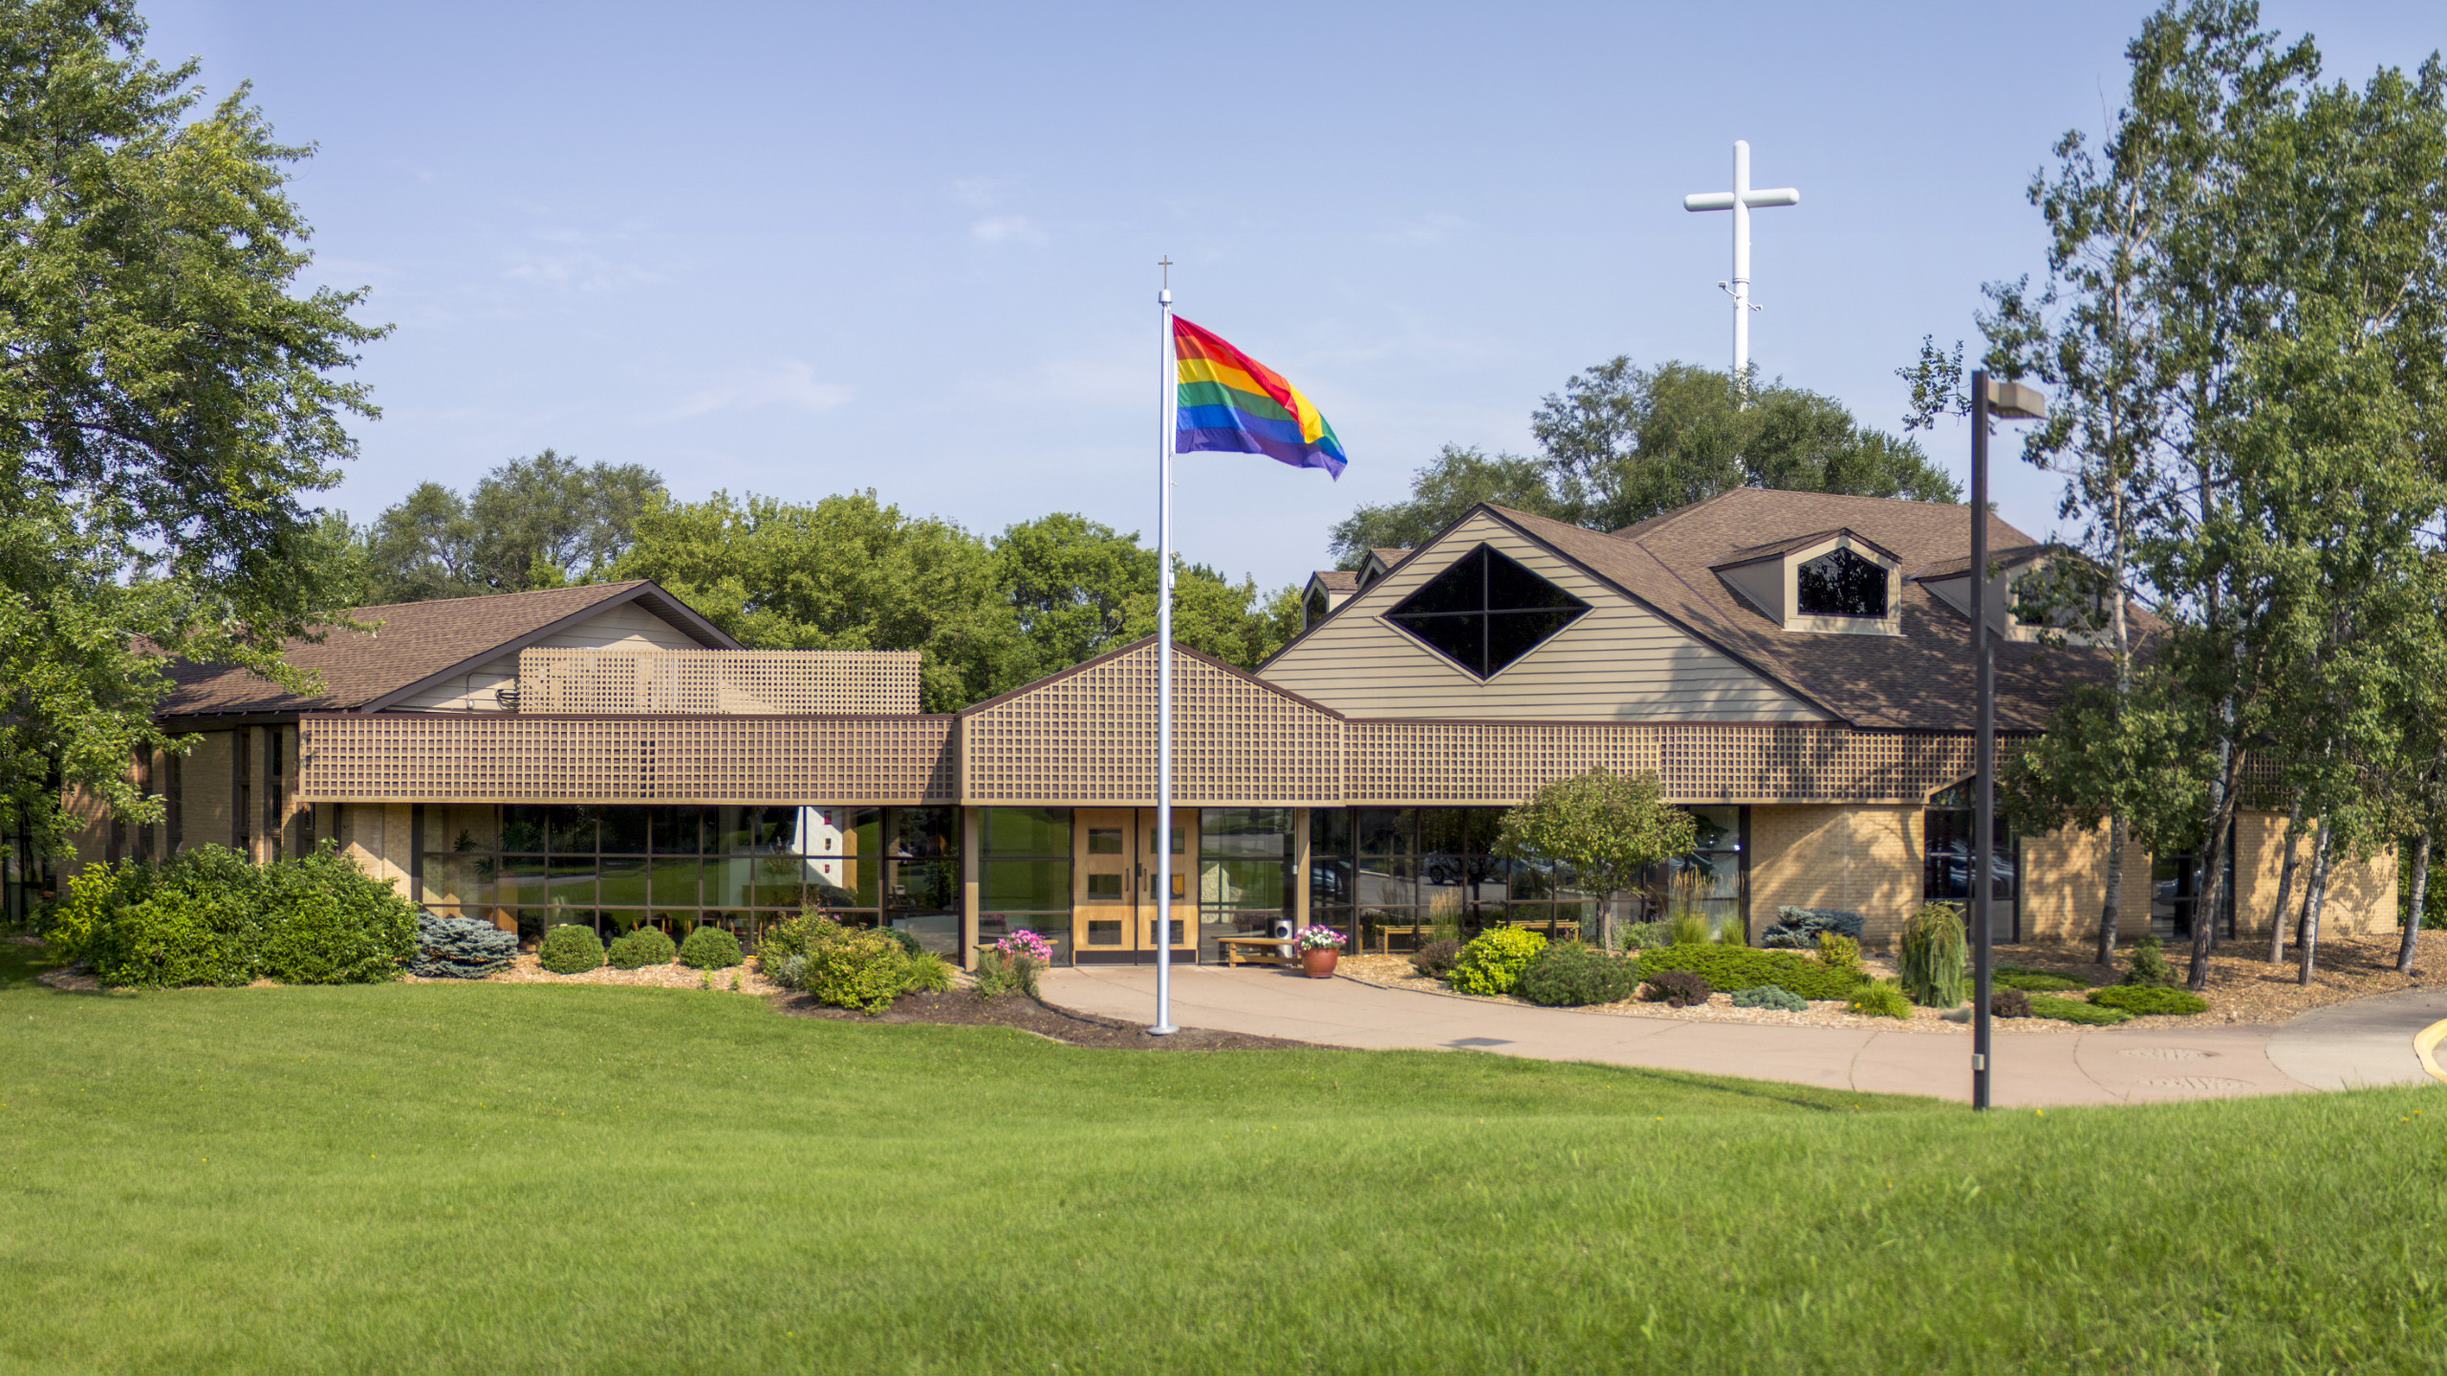 Church building with rainbow flag